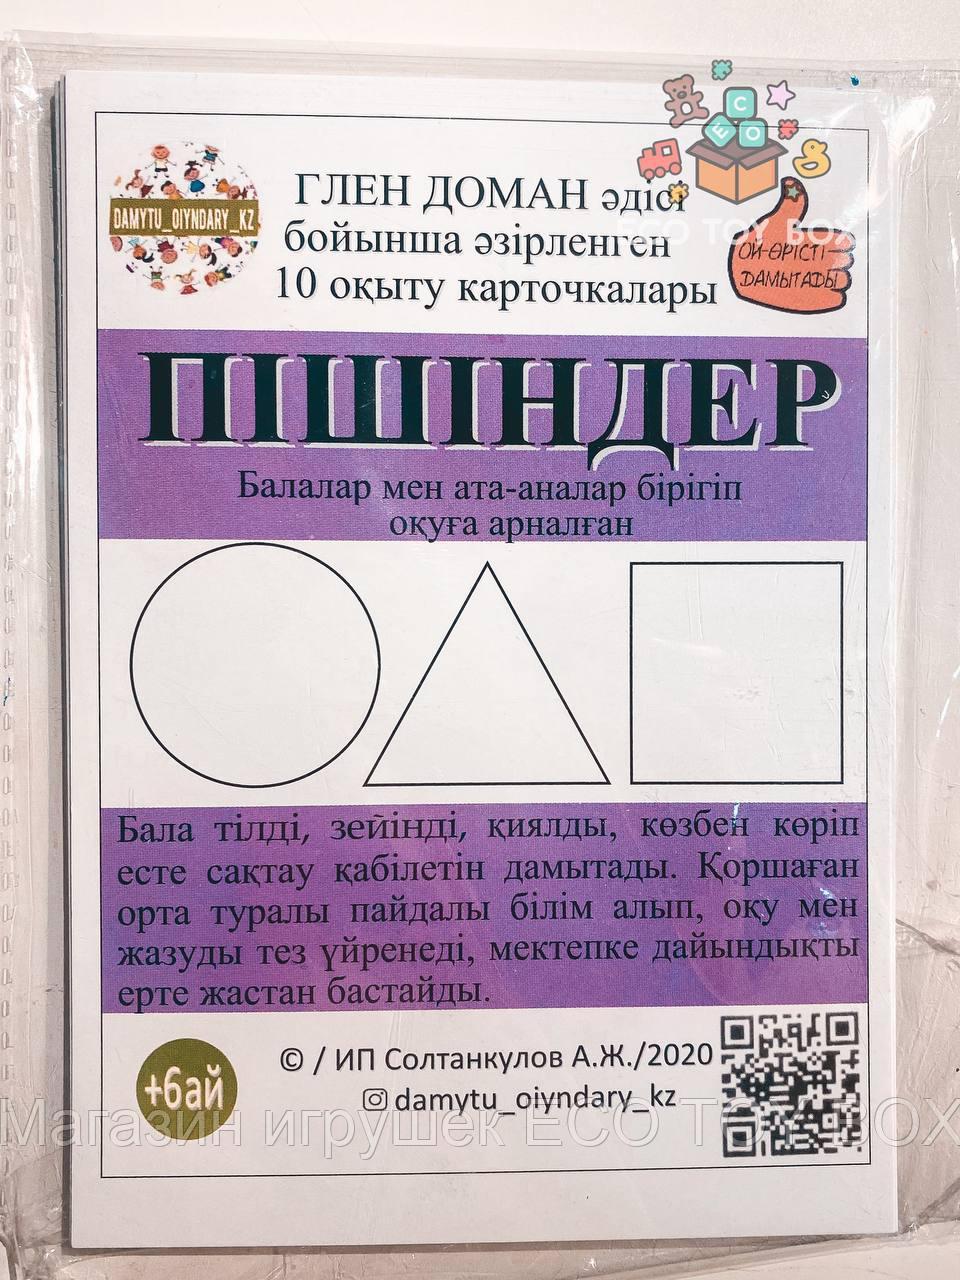 Карточки Домана на казахском языке Фигуры Пішіндер